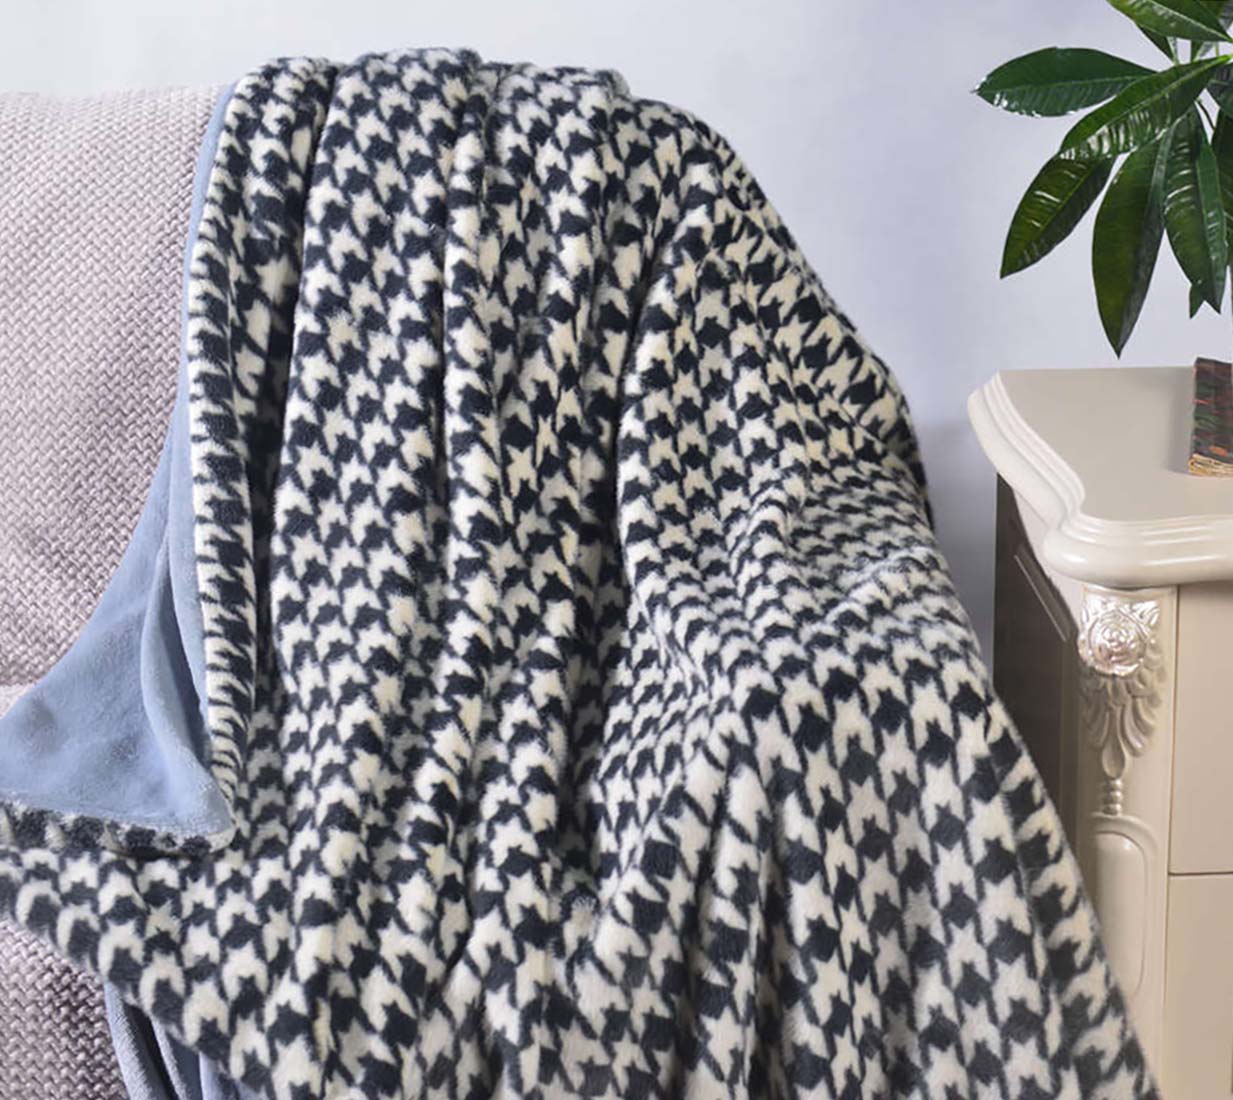 Marten Fur Blanket With Flannel Backing #BL0102